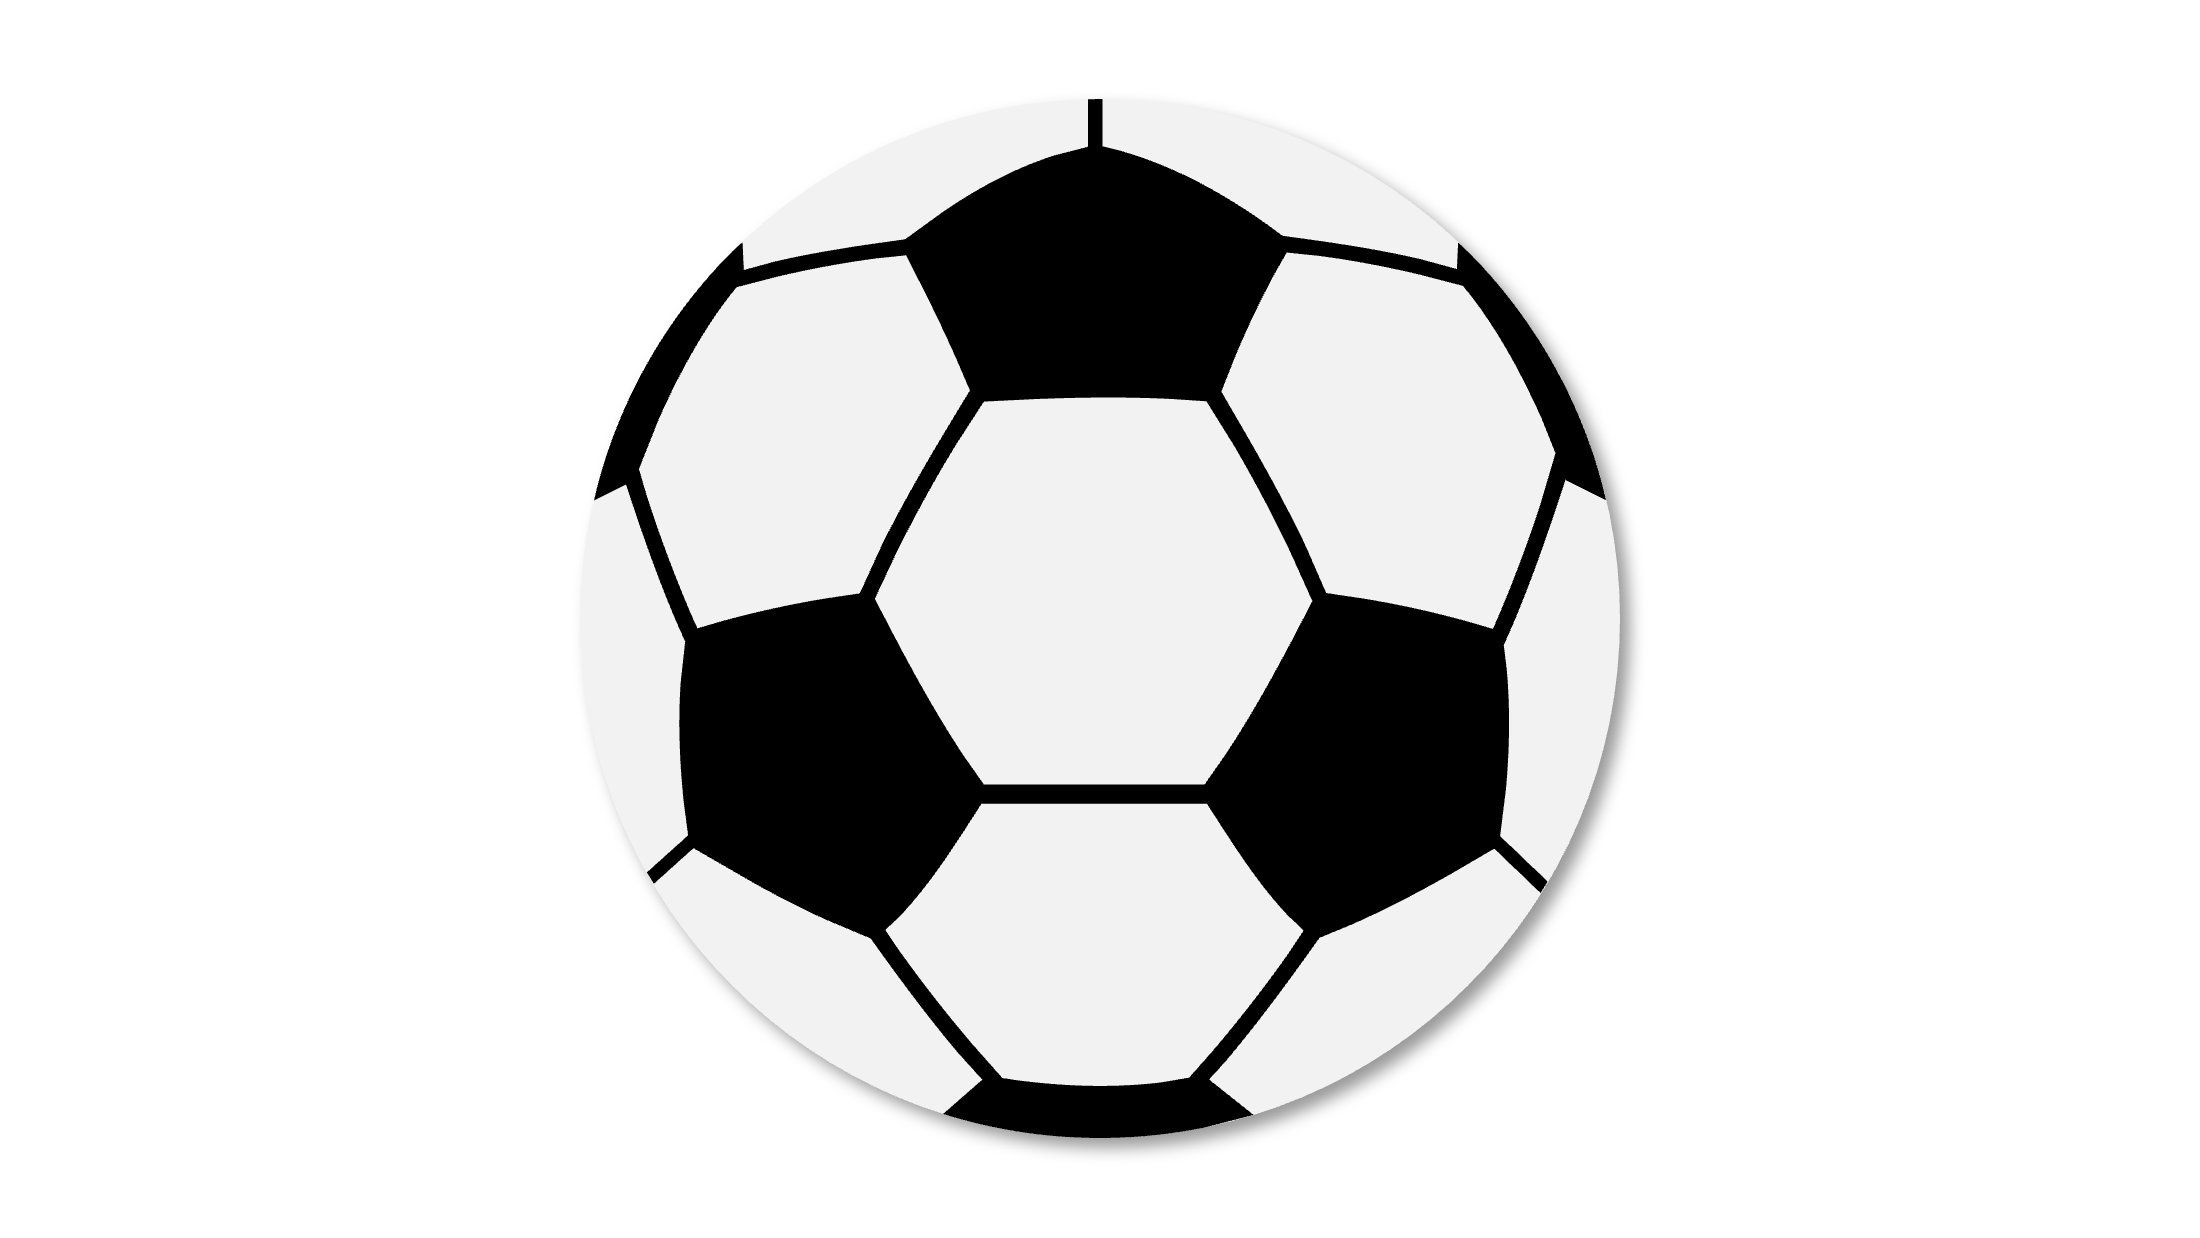 サッカーボール の図形イラスト パワポ王国